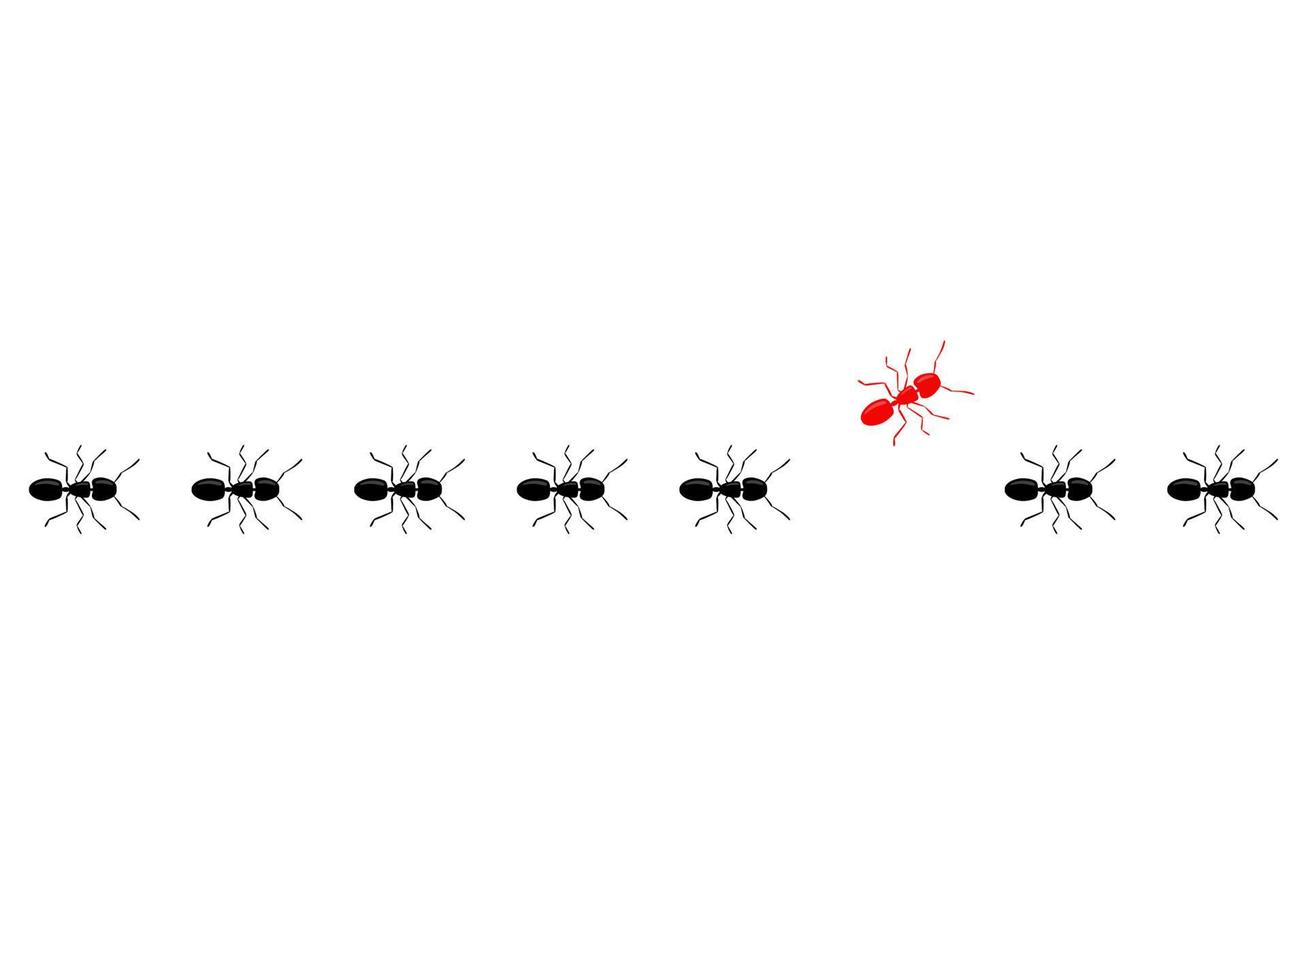 Ameisenspur. anders denken konzept. Rote Ameise geht einen anderen Weg als schwarze Ameisen. vektor